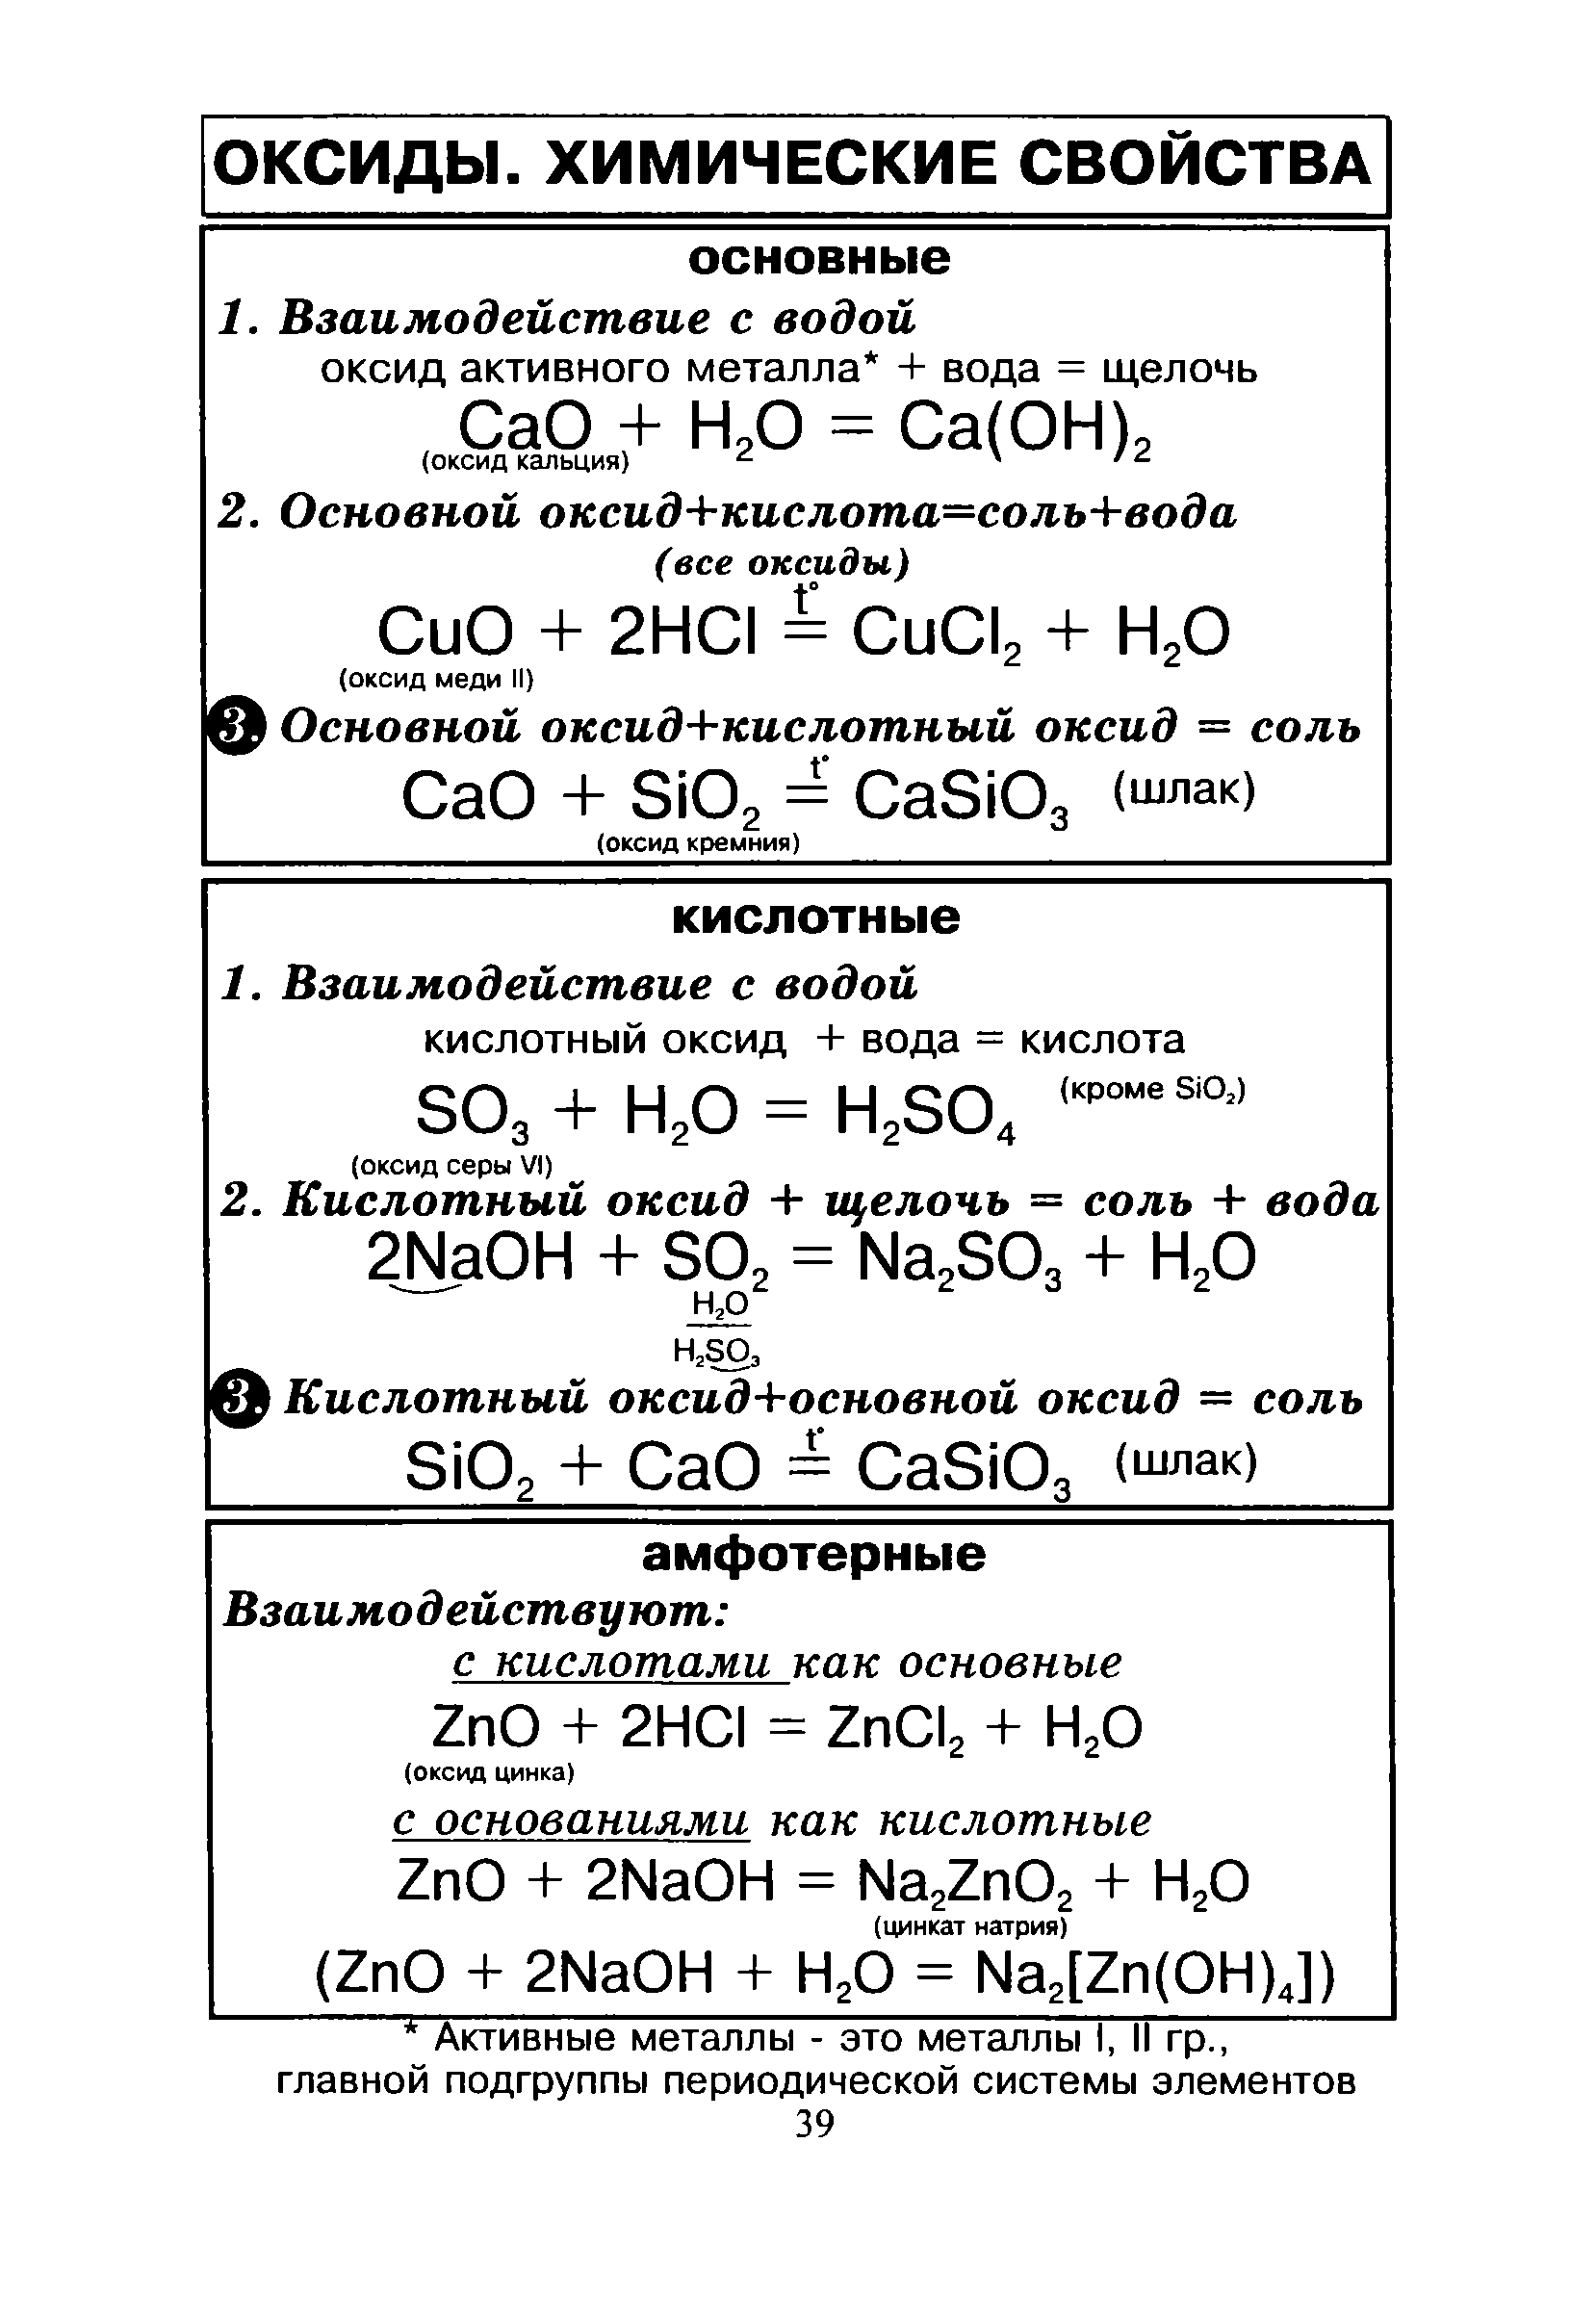 Оксиды и т д. Химические свойства основных оксидов амфотерных оксидов. Химия 8 класс свойства основных и кислотных оксидов. Химические свойства основных и кислотных оксидов таблица. Химические свойства основных оксидов 8 класс таблица.